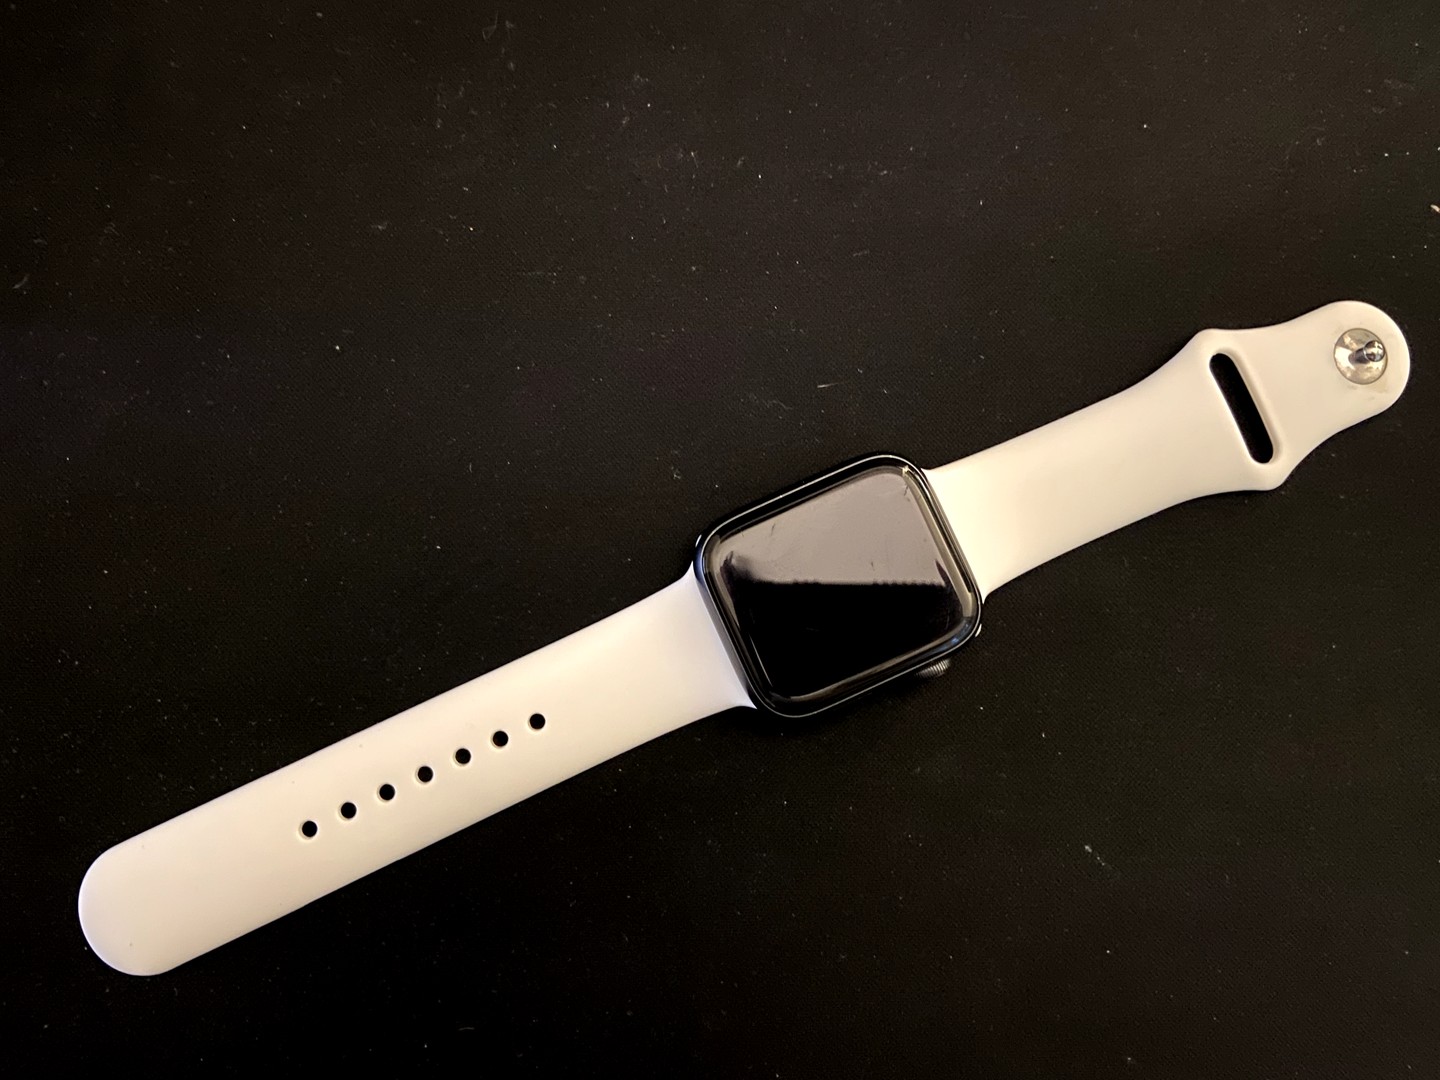 accesorios para electronica - Apple Watch series 5 de 44mm CON ICLOUD LOCK